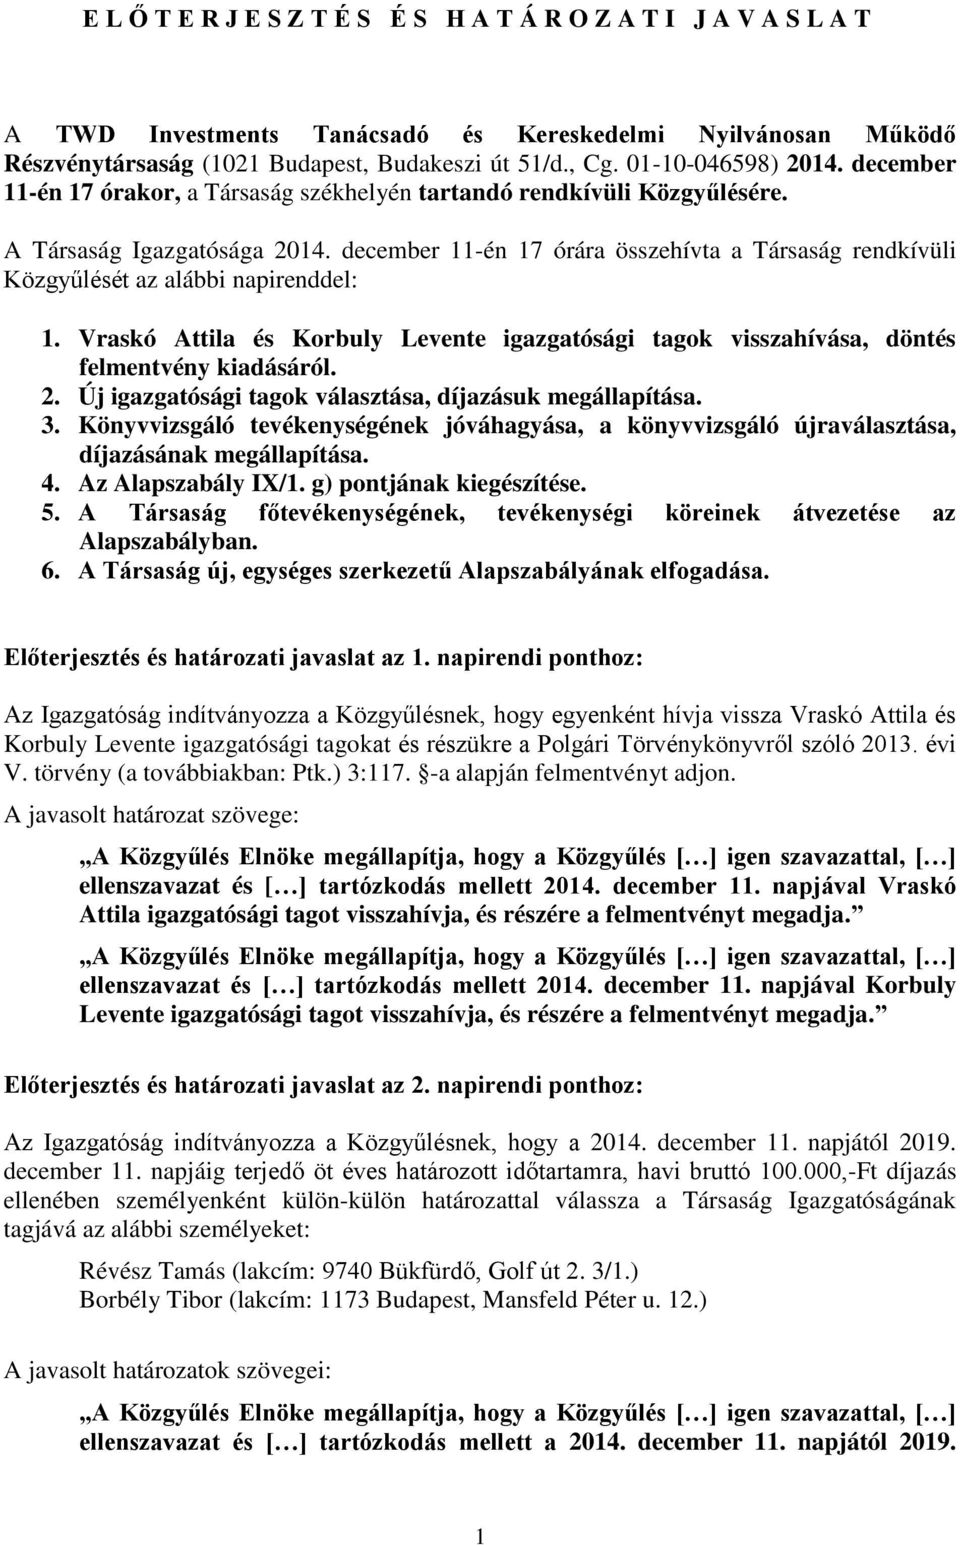 december 11-én 17 órára összehívta a Társaság rendkívüli Közgyűlését az alábbi napirenddel: 1. Vraskó Attila és Korbuly Levente igazgatósági tagok visszahívása, döntés felmentvény kiadásáról. 2.